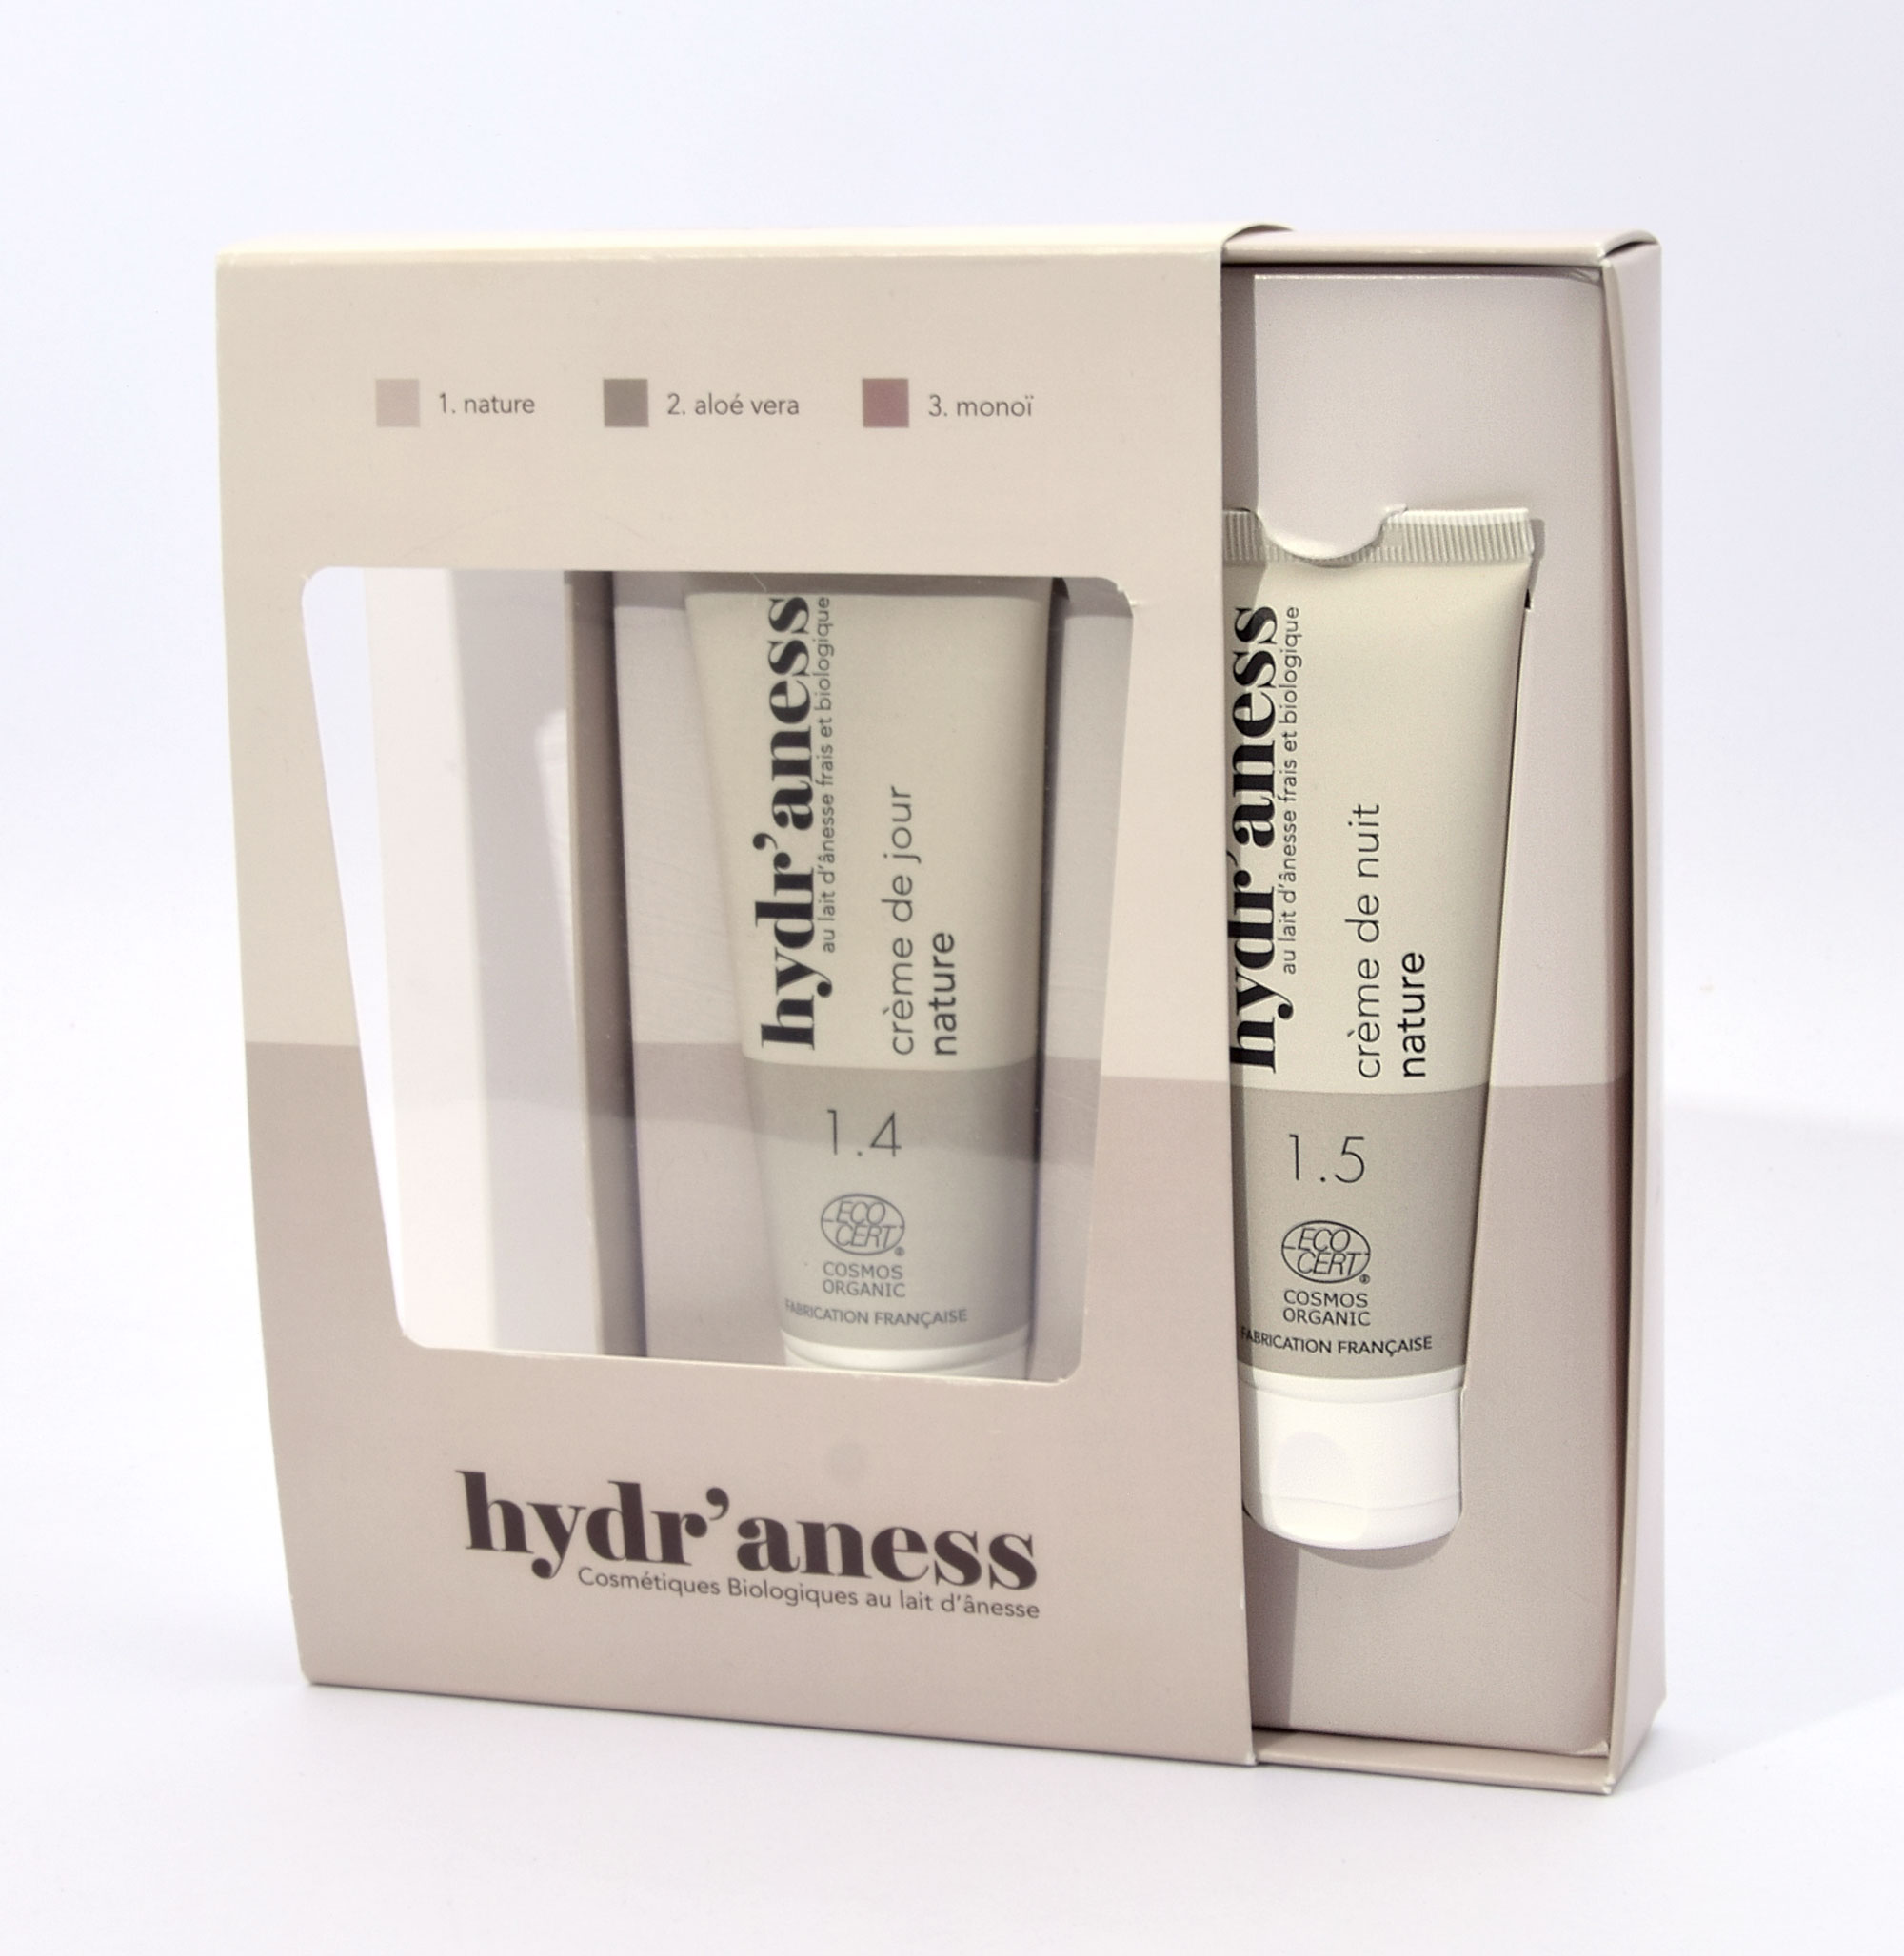 hydraness-boite-cosmetique